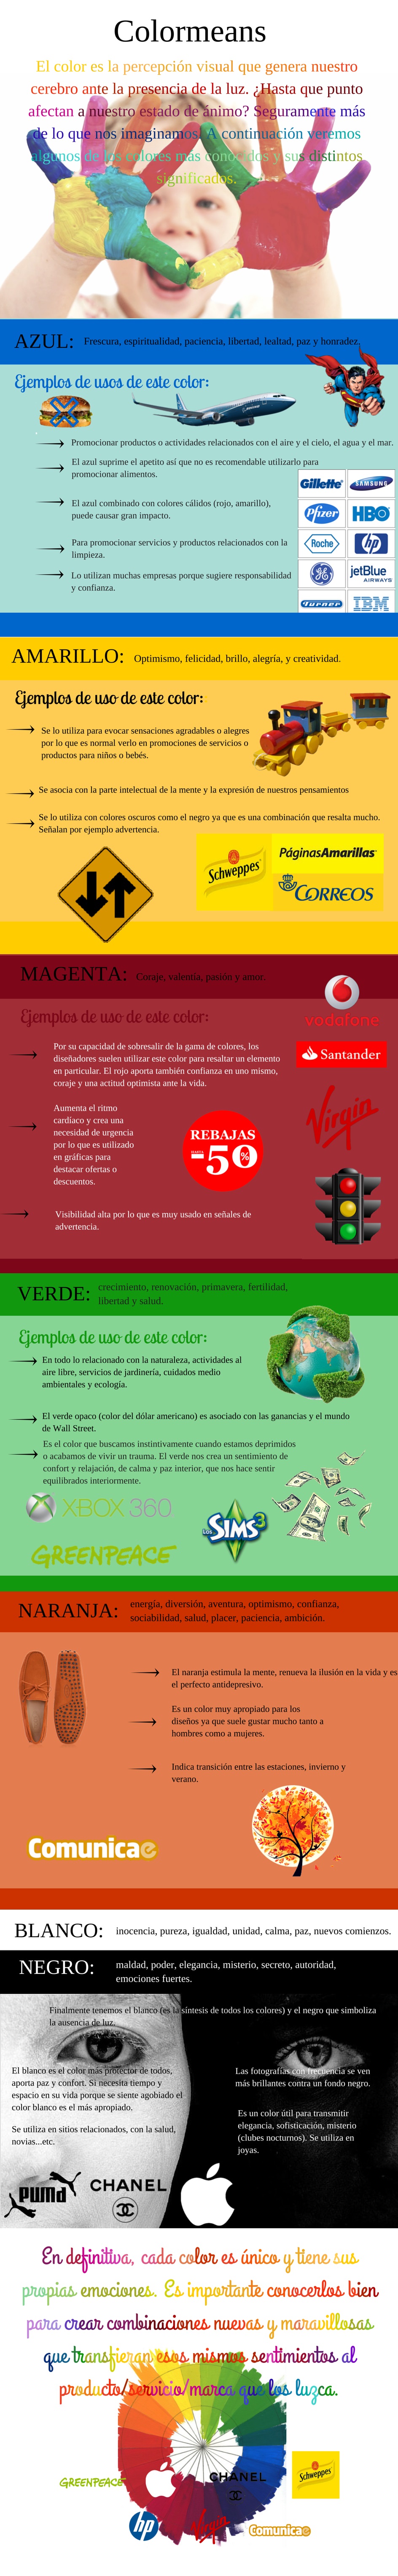 infografia colores